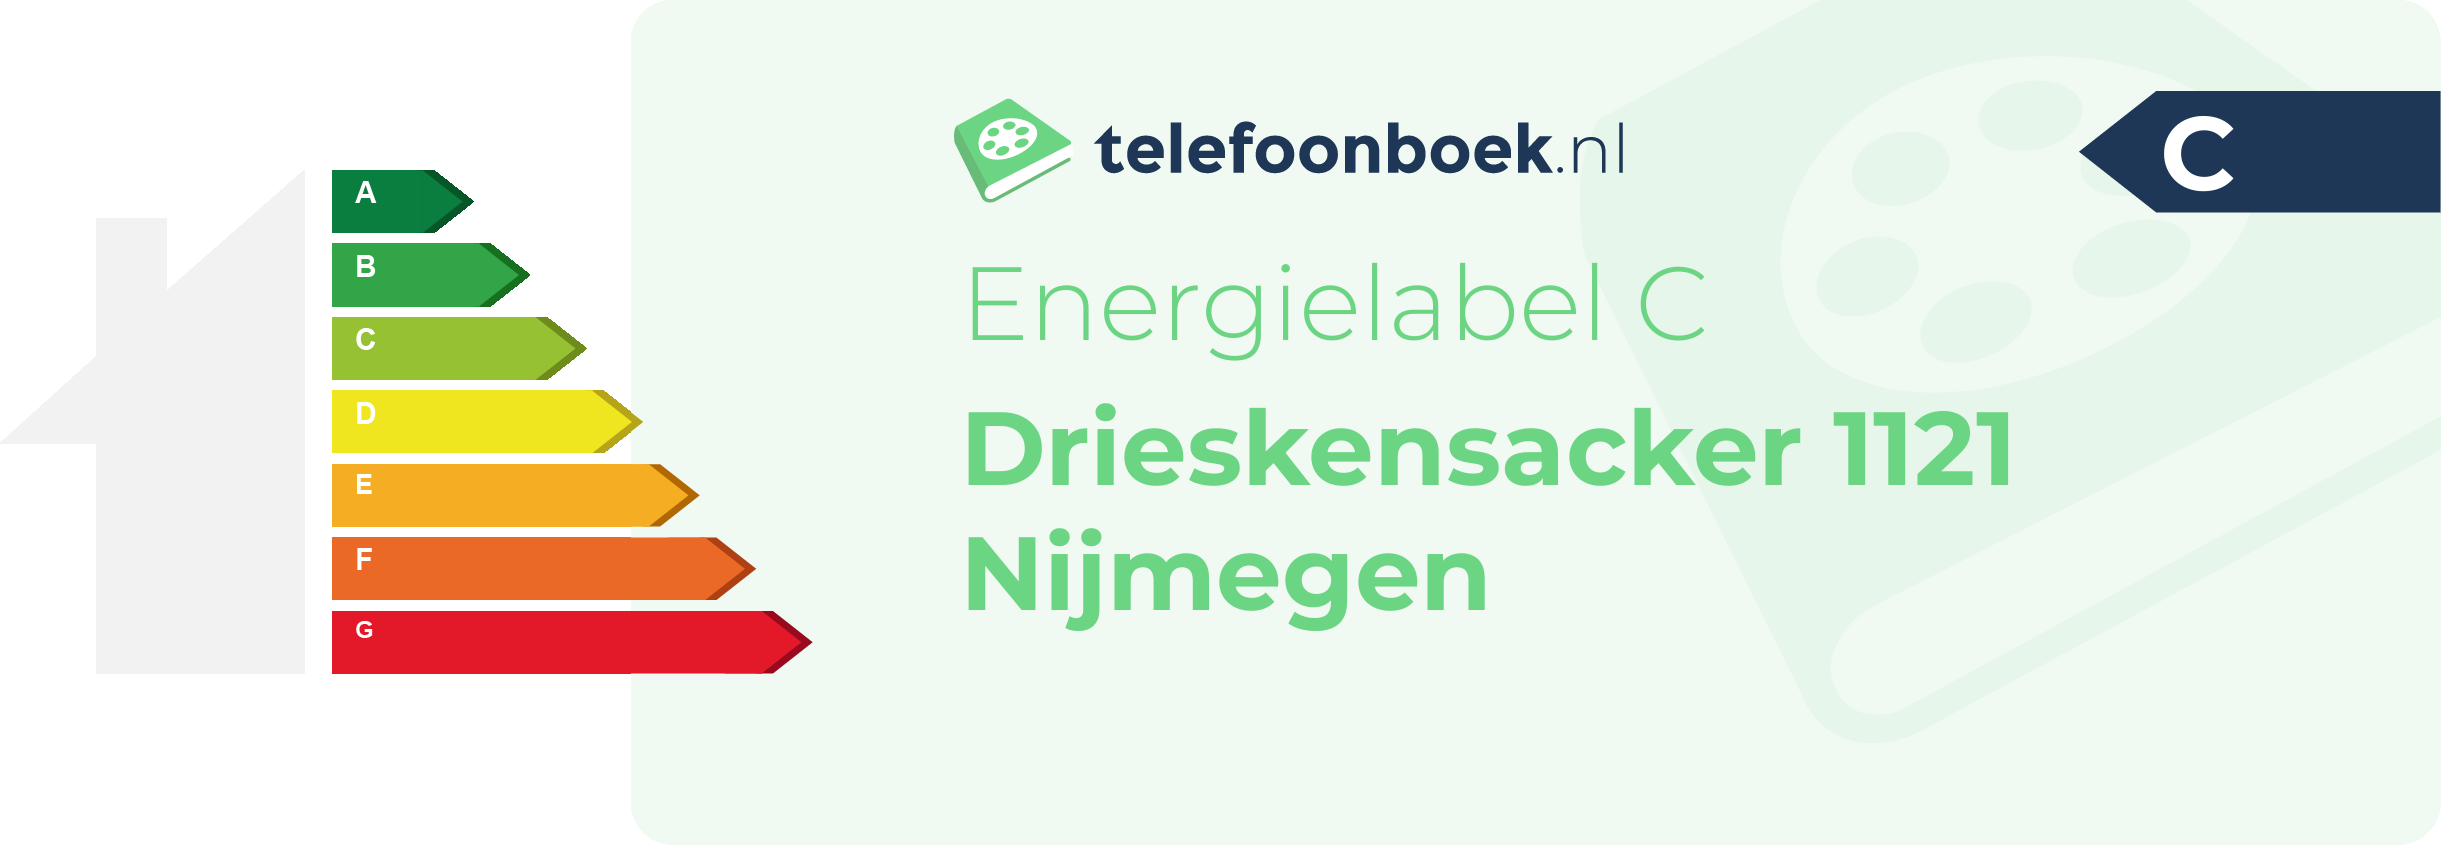 Energielabel Drieskensacker 1121 Nijmegen